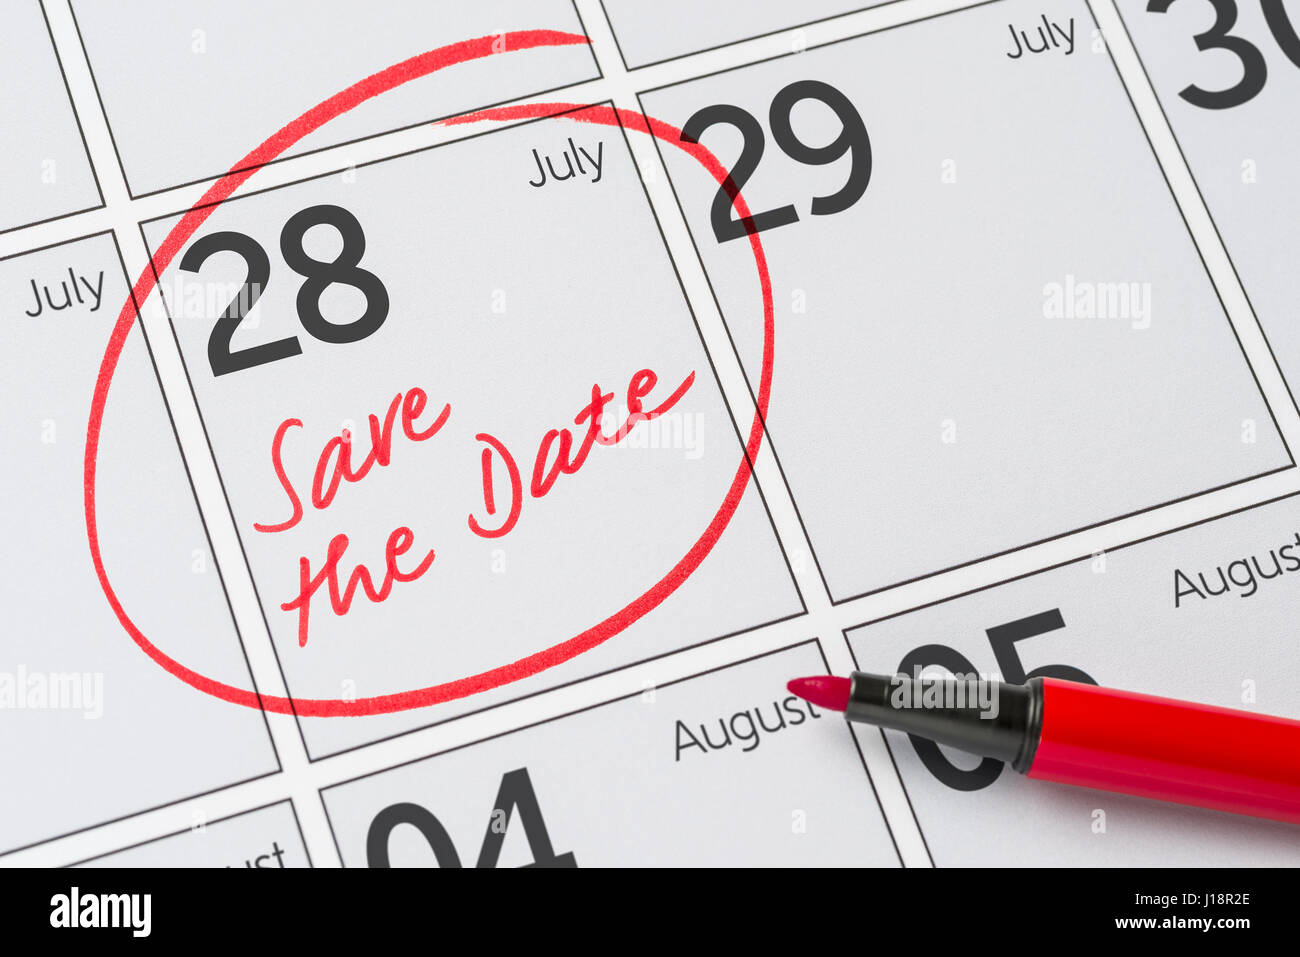 Enregistrer la date inscrite sur un calendrier - Juillet 28 Banque D'Images